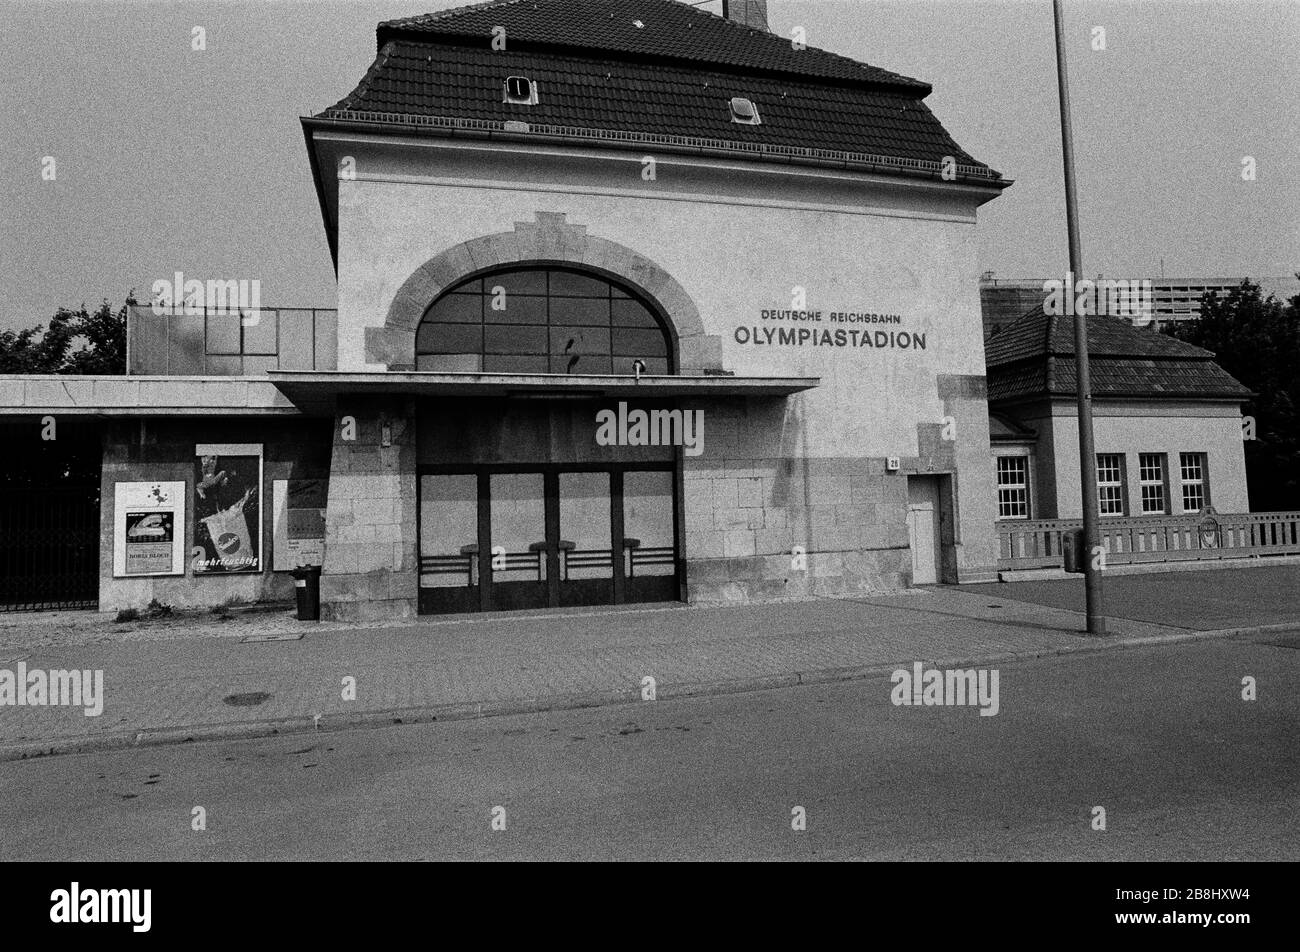 La stazione suburbana della S-Bahn dello Stadio Olimpico di Berlino Ovest, durante il periodo la città è stata divisa e la ferrovia è stata gestita dalle autorità della Germania Est. Il Muro di Berlino era una barriera costruita dalla Repubblica democratica tedesca (RDT, Germania orientale) a partire dal 13 agosto 1961, che ha completamente tagliato Berlino Ovest dalla Germania Est circostante e da Berlino Est. Il Muro è stato aperto il 9. Novembre 1989 consentire la libera circolazione delle persone da est a ovest. Foto Stock